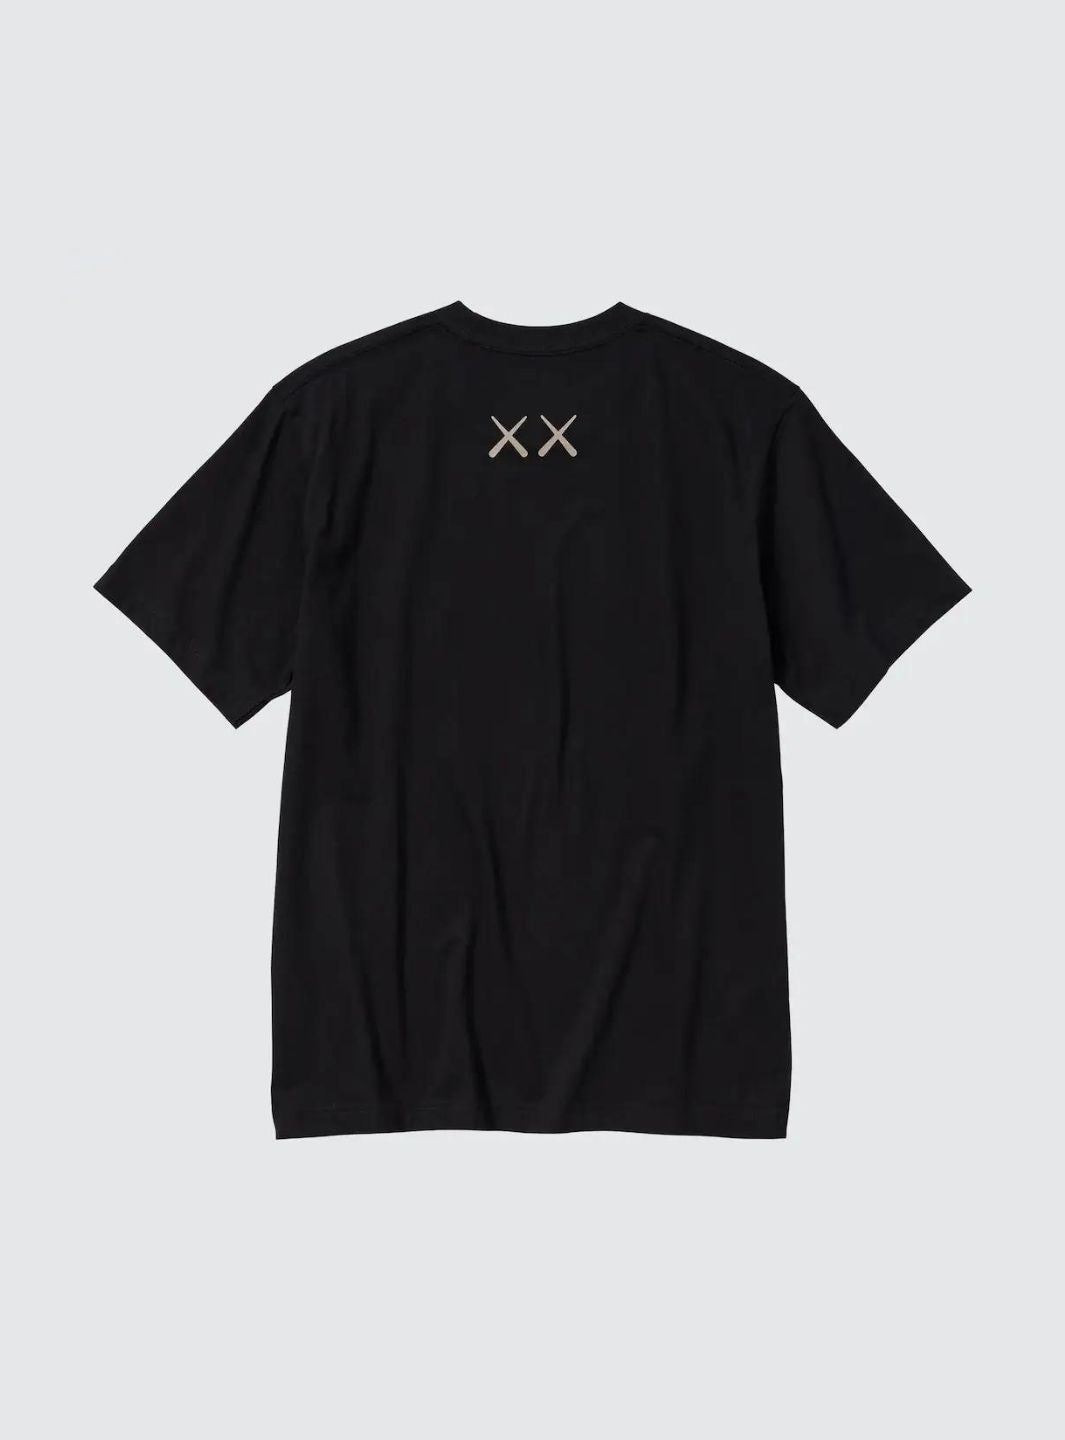 Uniqlo x Kaws T-Shirt Black